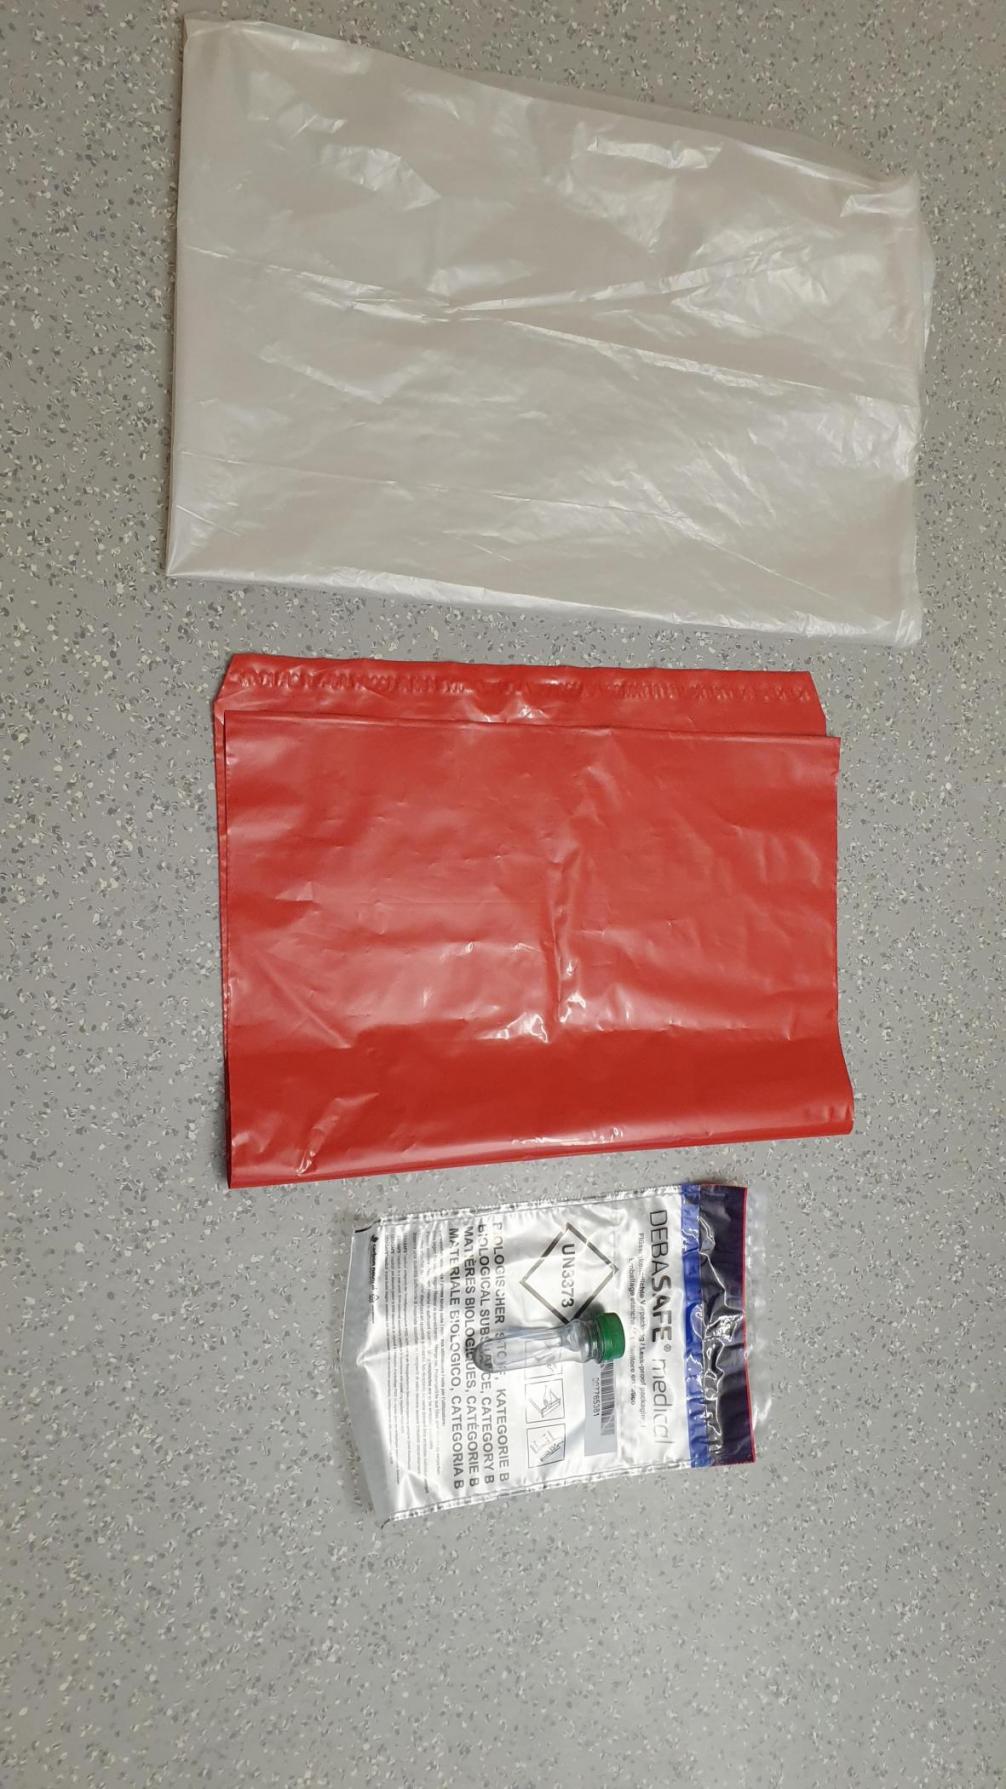 3 Plastiksäcke transparent, rot und mit unleserlicher Aufschrift inkl. PCR Röhrchen